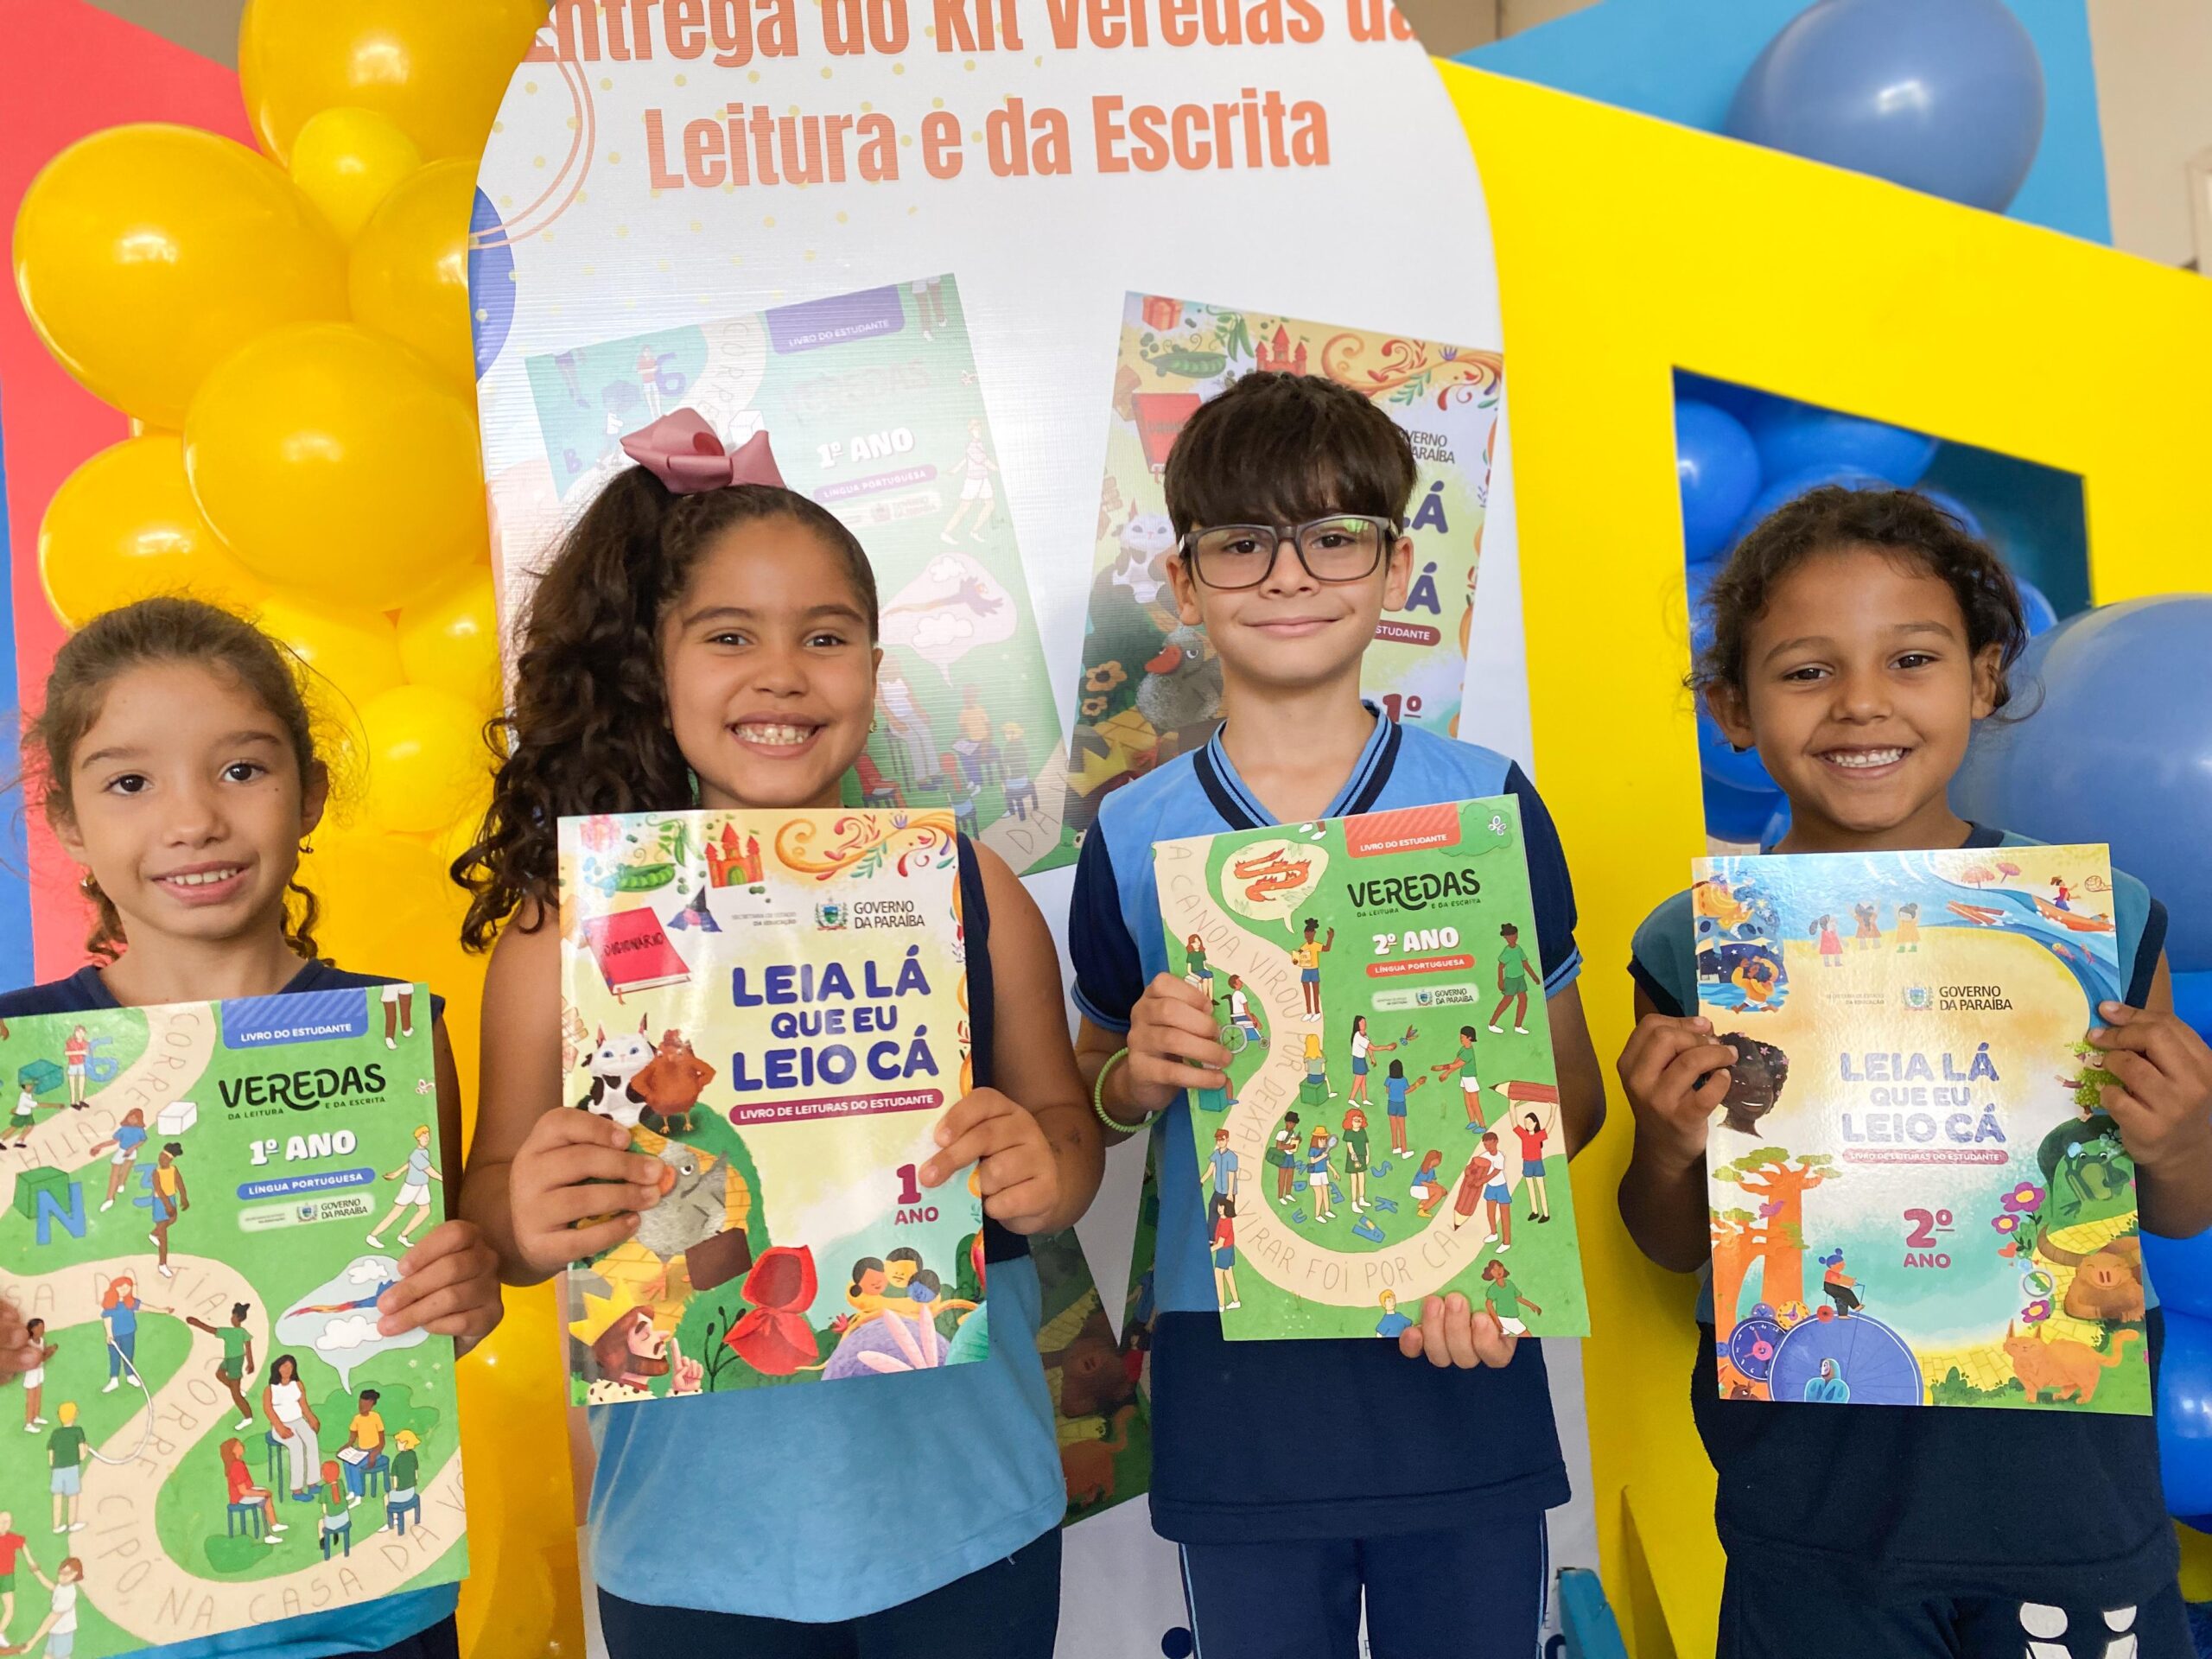 Entrega-de-Livros-1-e-2-anos-5-scaled Estudantes monteirense recebem livros da coleção “Veredas da Leitura e da Escrita”